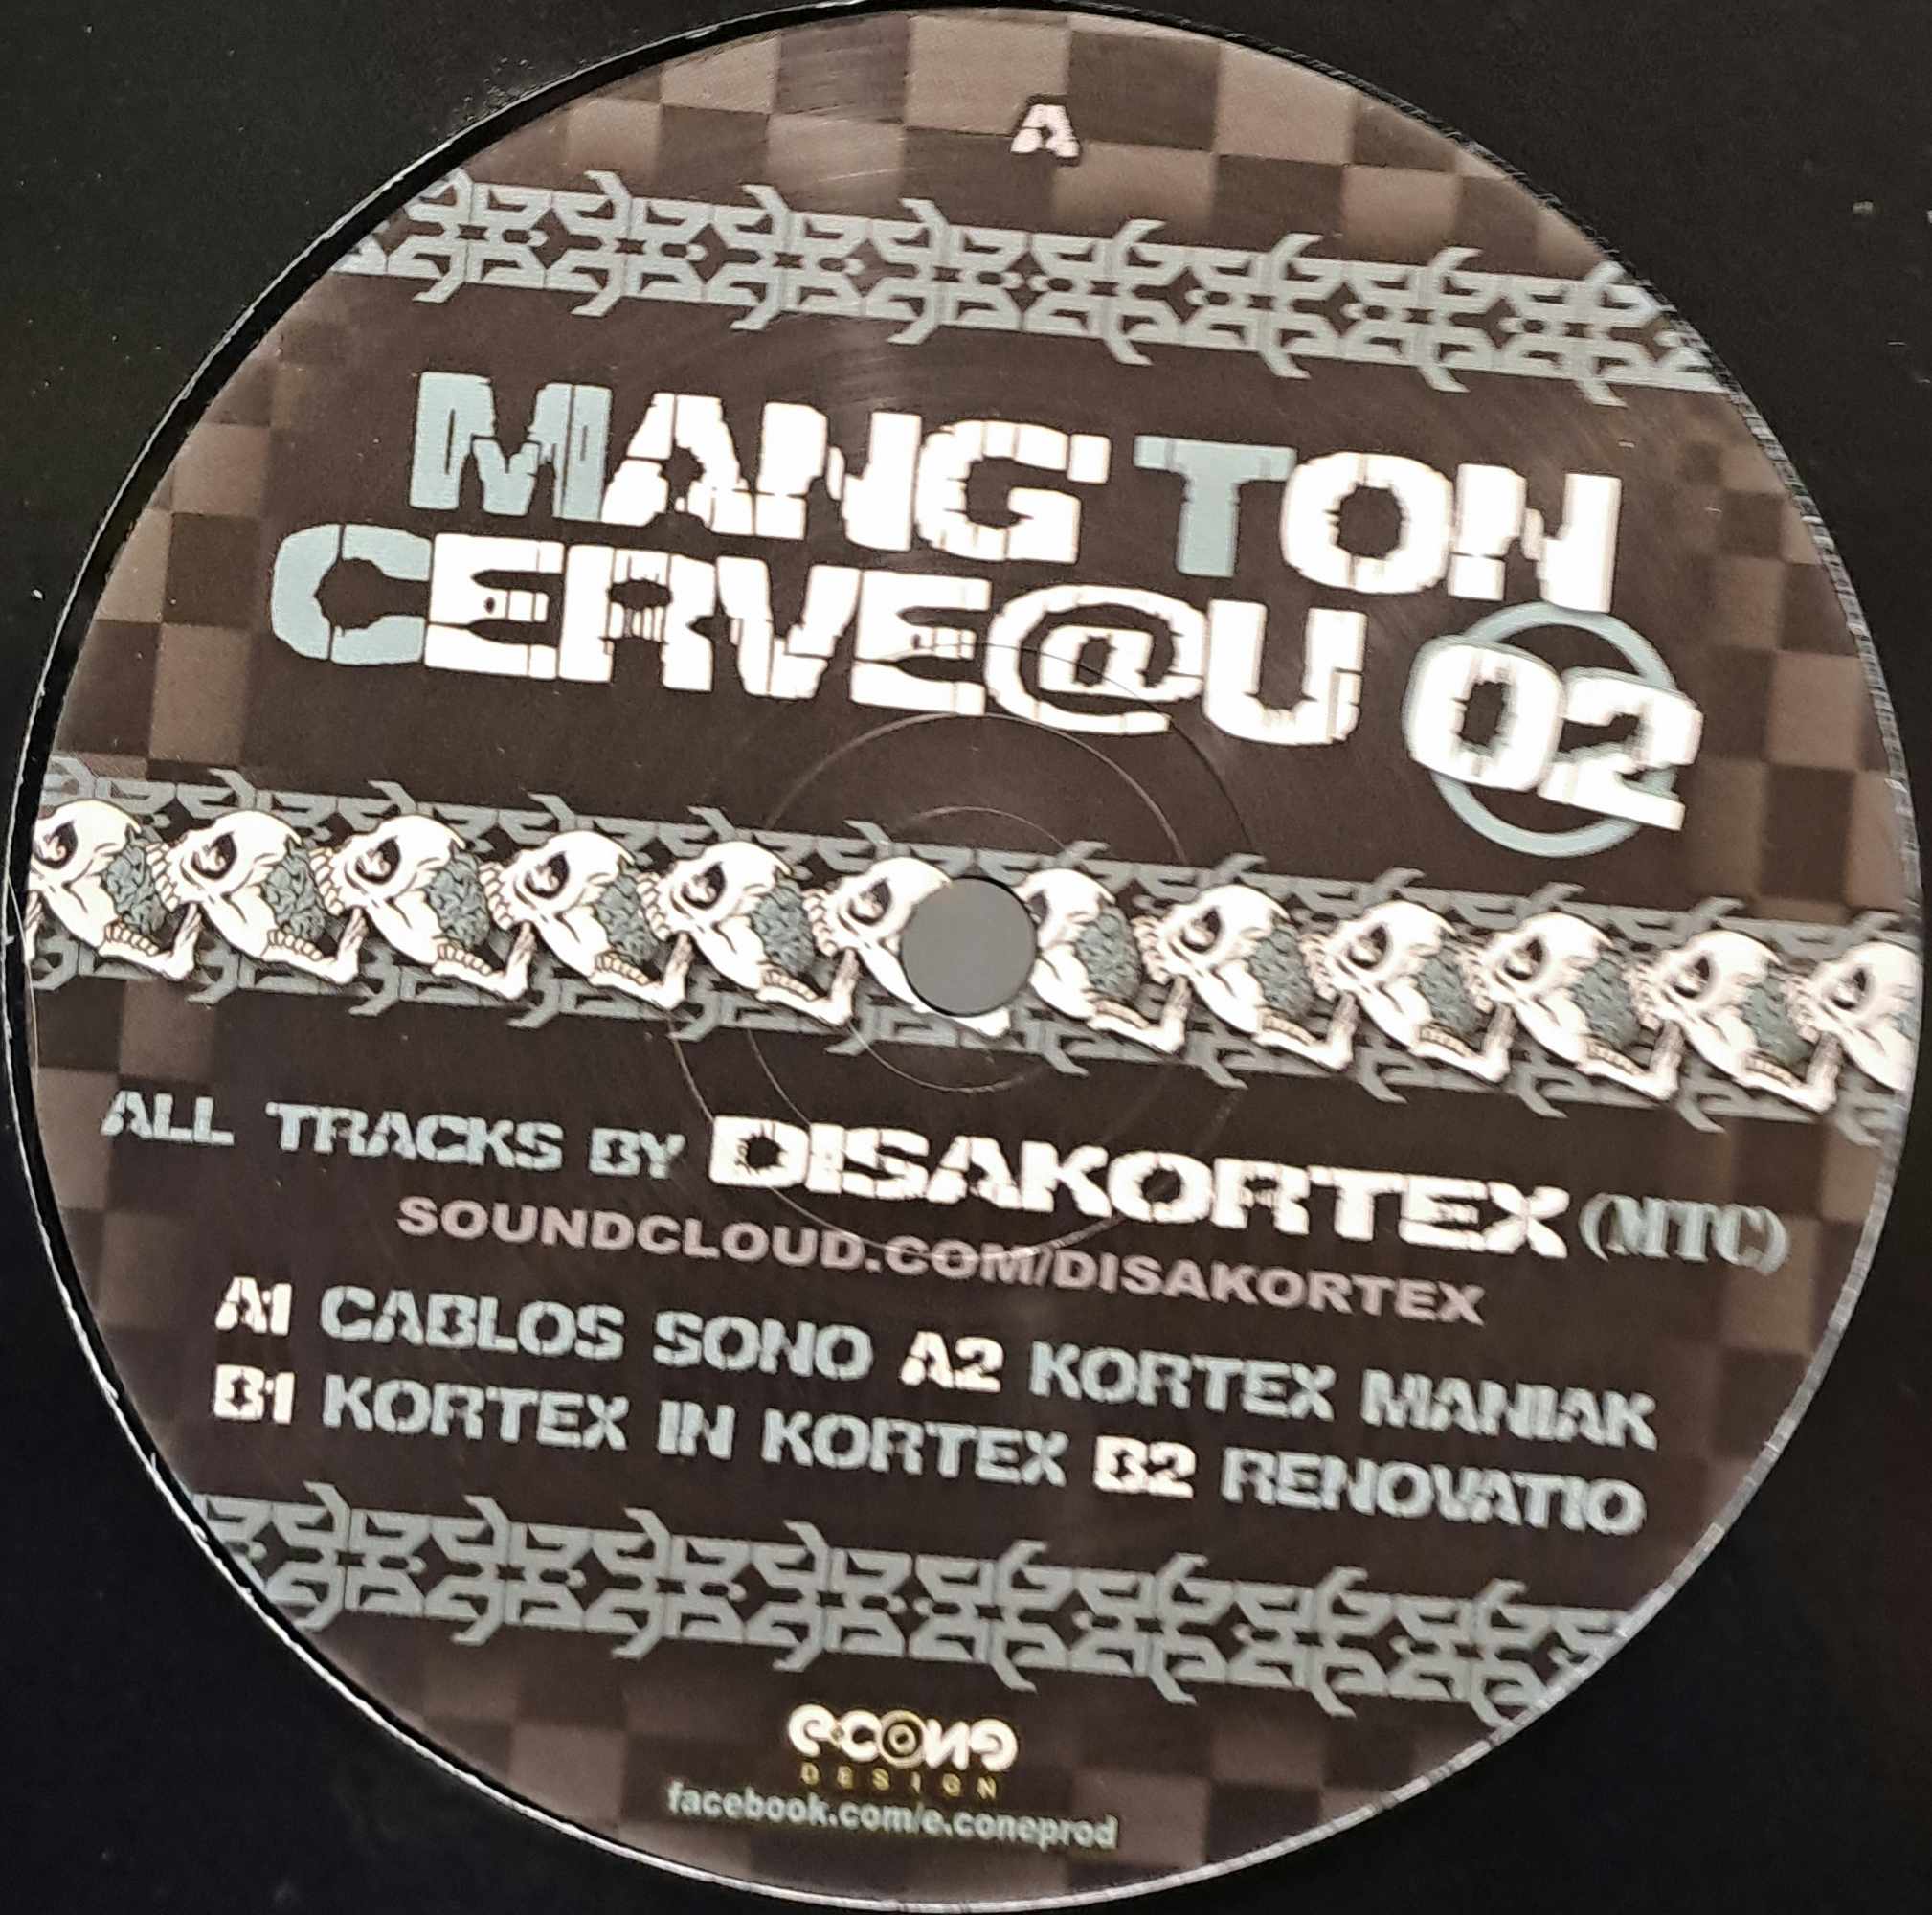 Mang'ton Cerveau 02 - vinyle freetekno